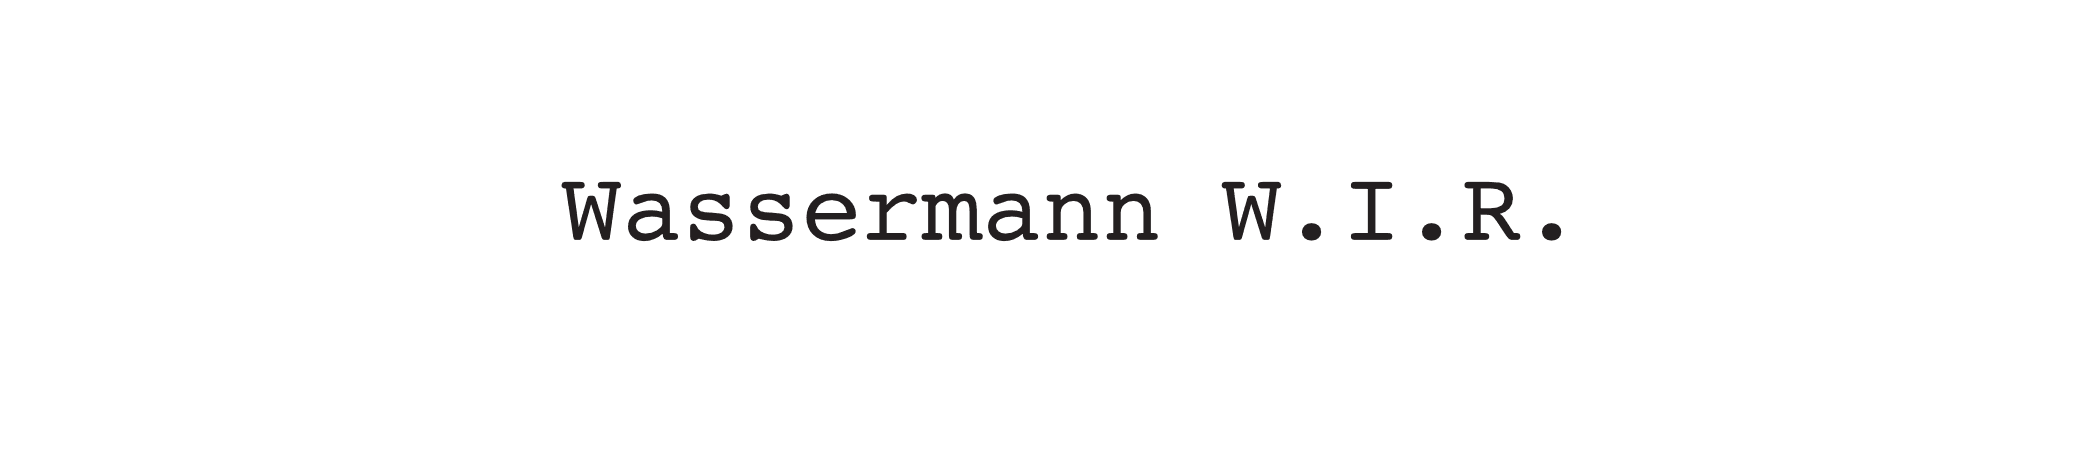 wassermann banner